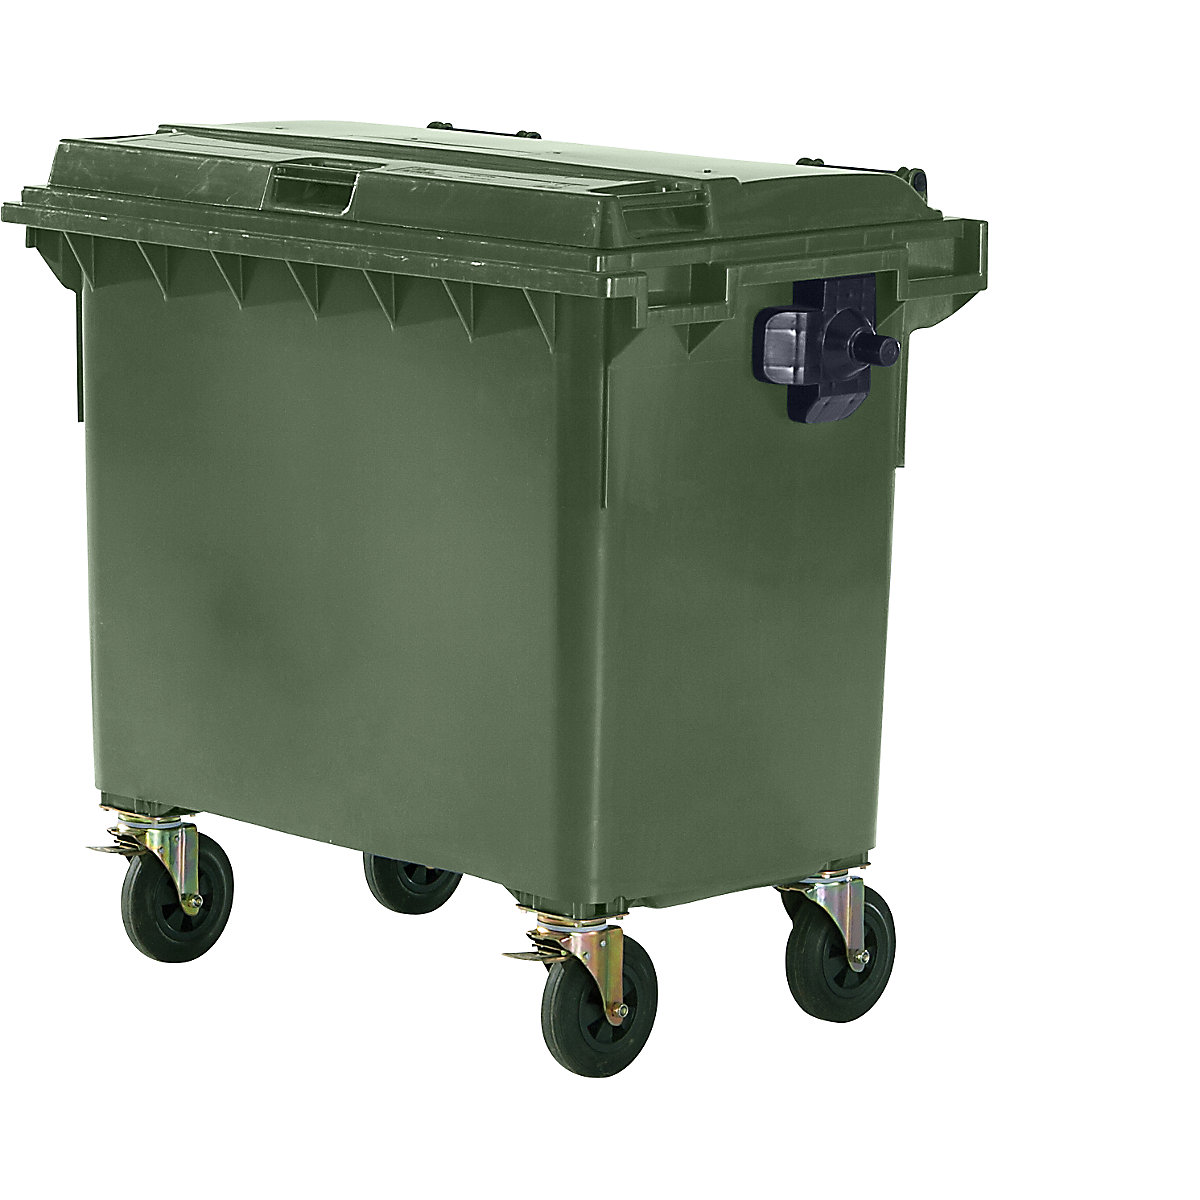 Container per rifiuti in plastica, DIN EN 840, capacità 660 l, largh. x alt. x prof. 1360 x 1235 x 765 mm, verde-3